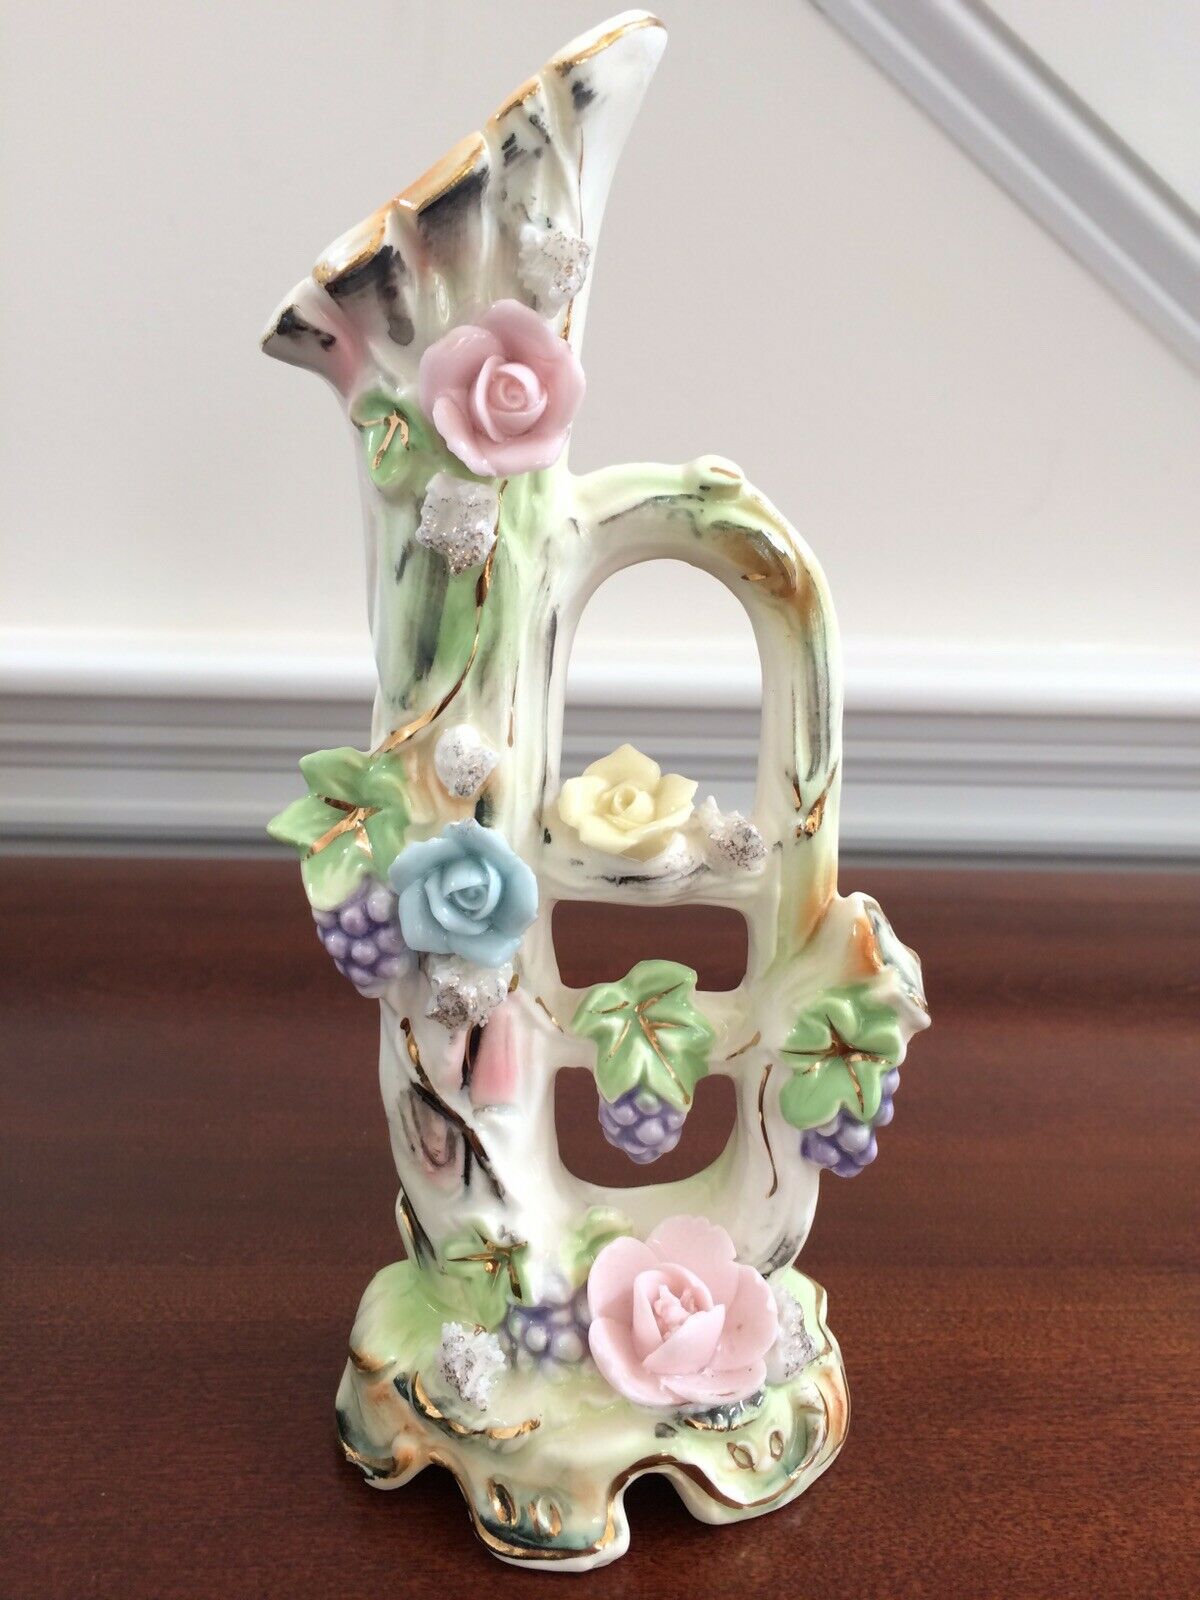 Vtg Hand Painted Porcelain Ceramic Trumpet Floral Rose Grapes Vase Figurine 8.5”